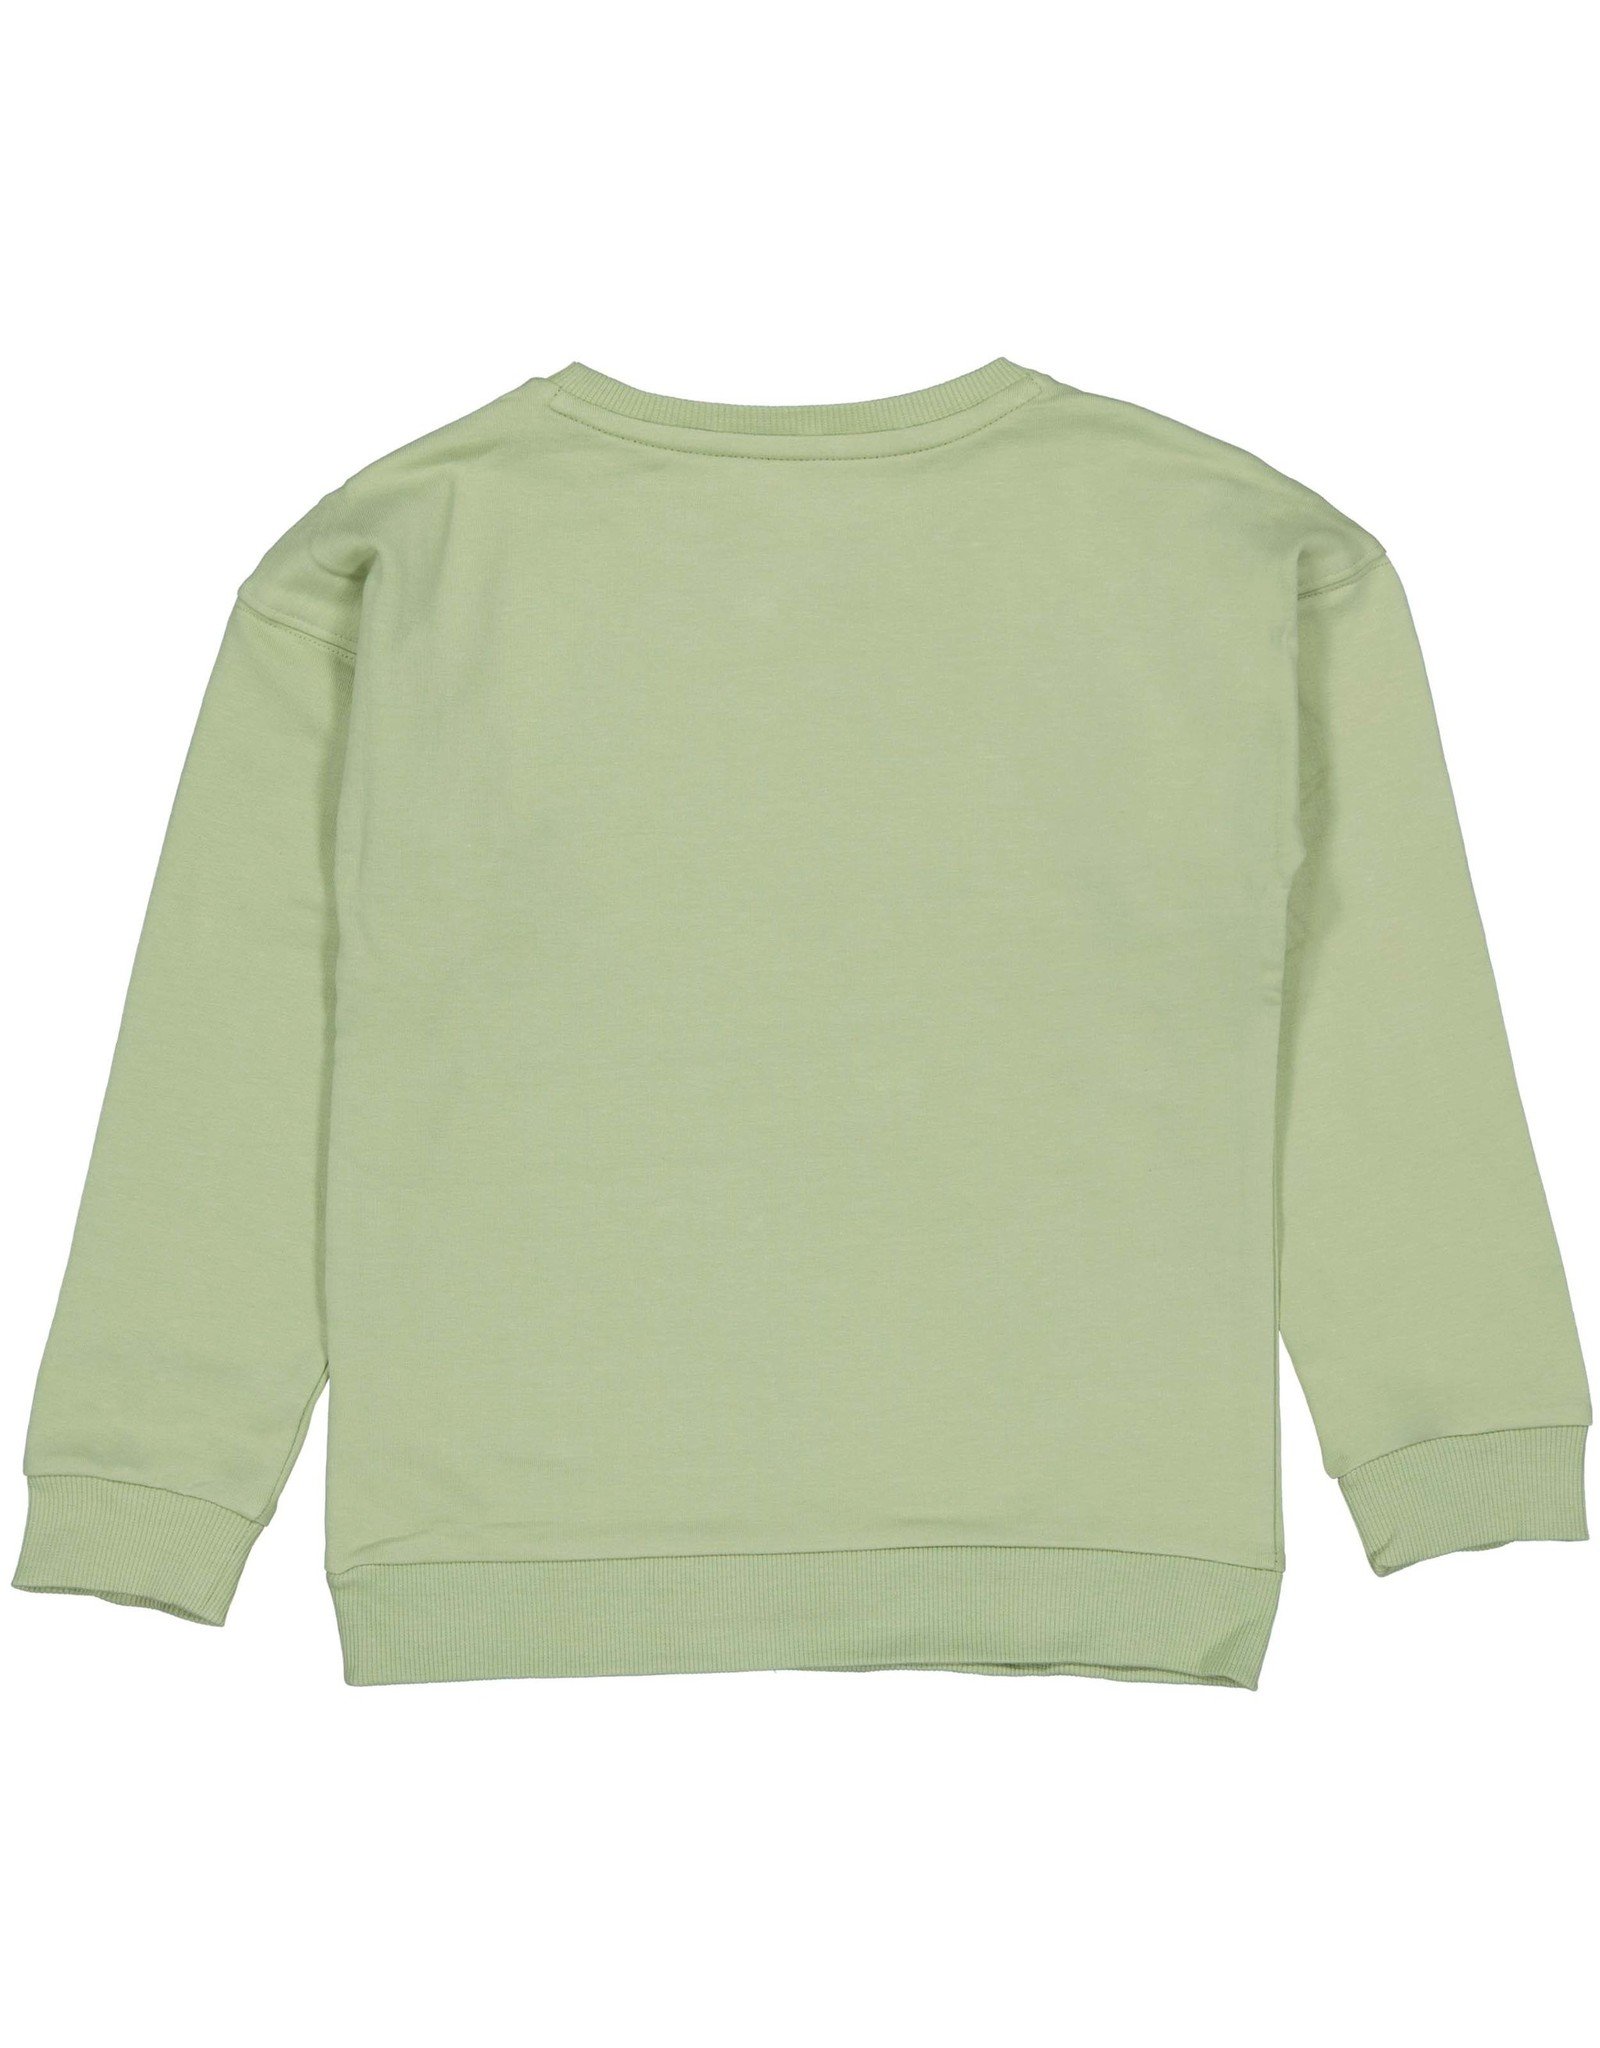 Quapi Sweater Quapi RAMZI green mistt